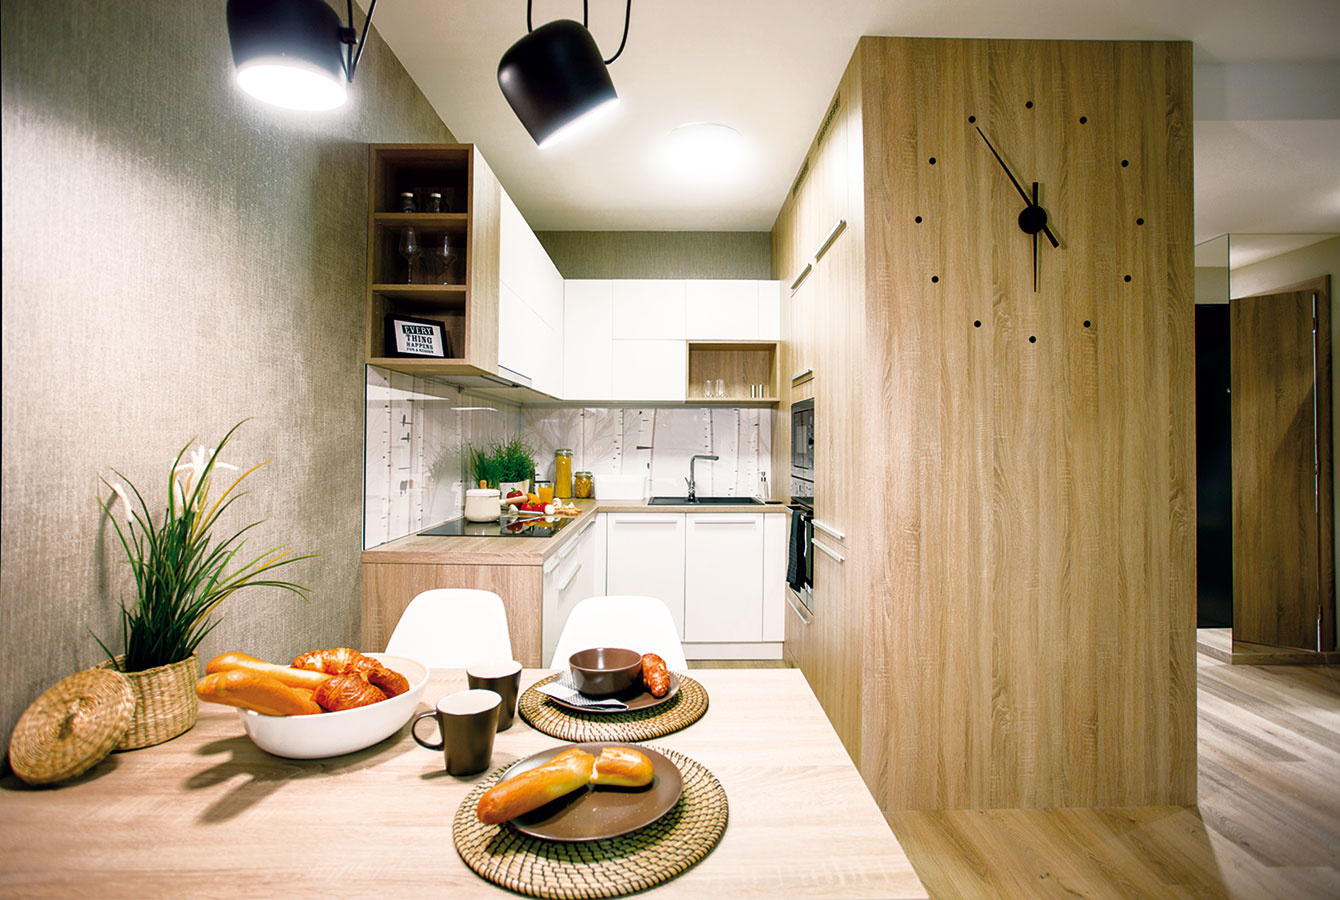 Premyslené stretnutie. Kuchyňa menšieho z bytov je praktická „biela klasika“, ktorú architekti skombinovali s drevenými prvkami. Smerom do obývačky je linka ukončená drevenými poličkami, kde môžu byť knižky, doplnky, obrázky – táto časť tak vyzerá menej kuchynsky a viac komunikuje s obývačkou. 